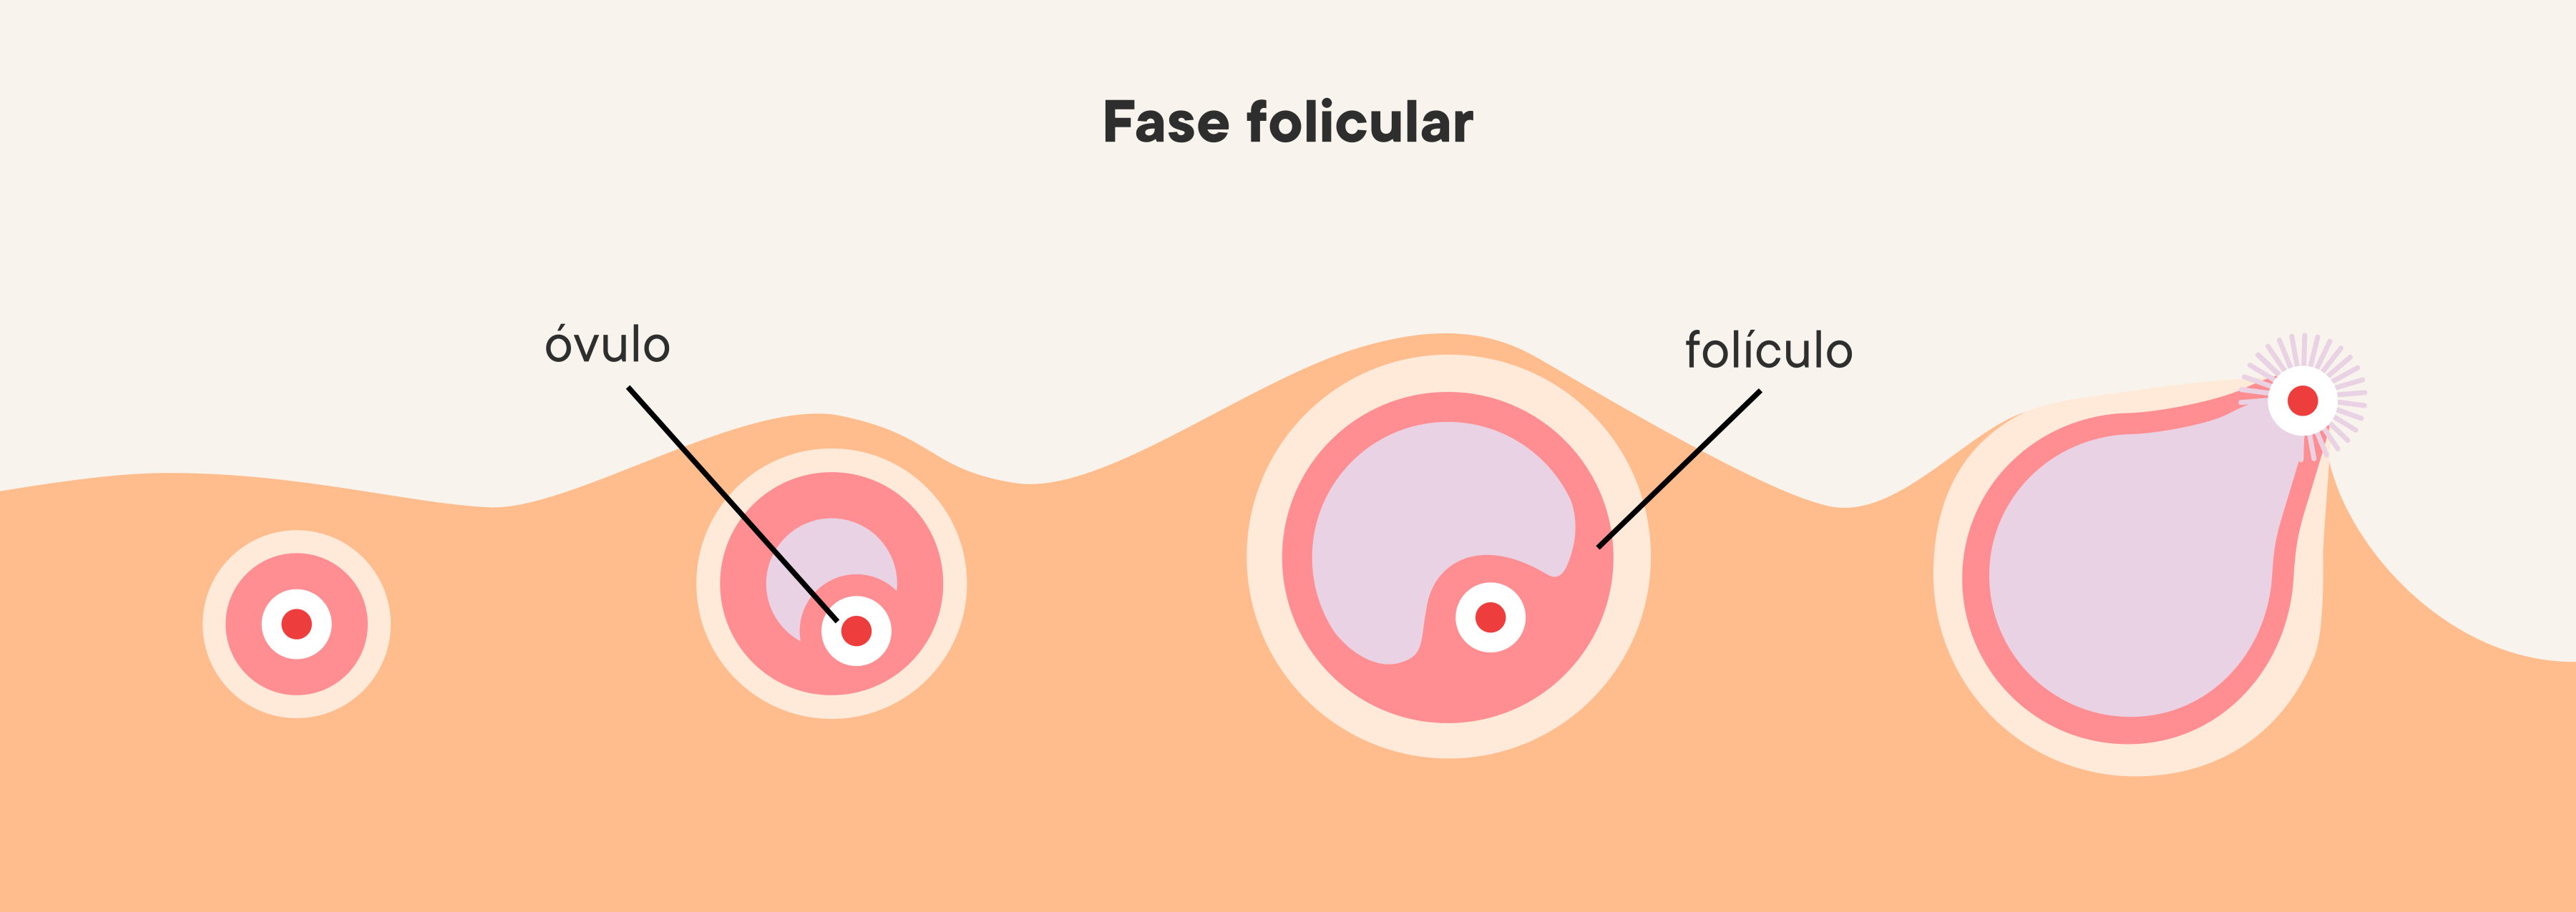 Ilustración de la progresión de la fase folicular en los ovarios.